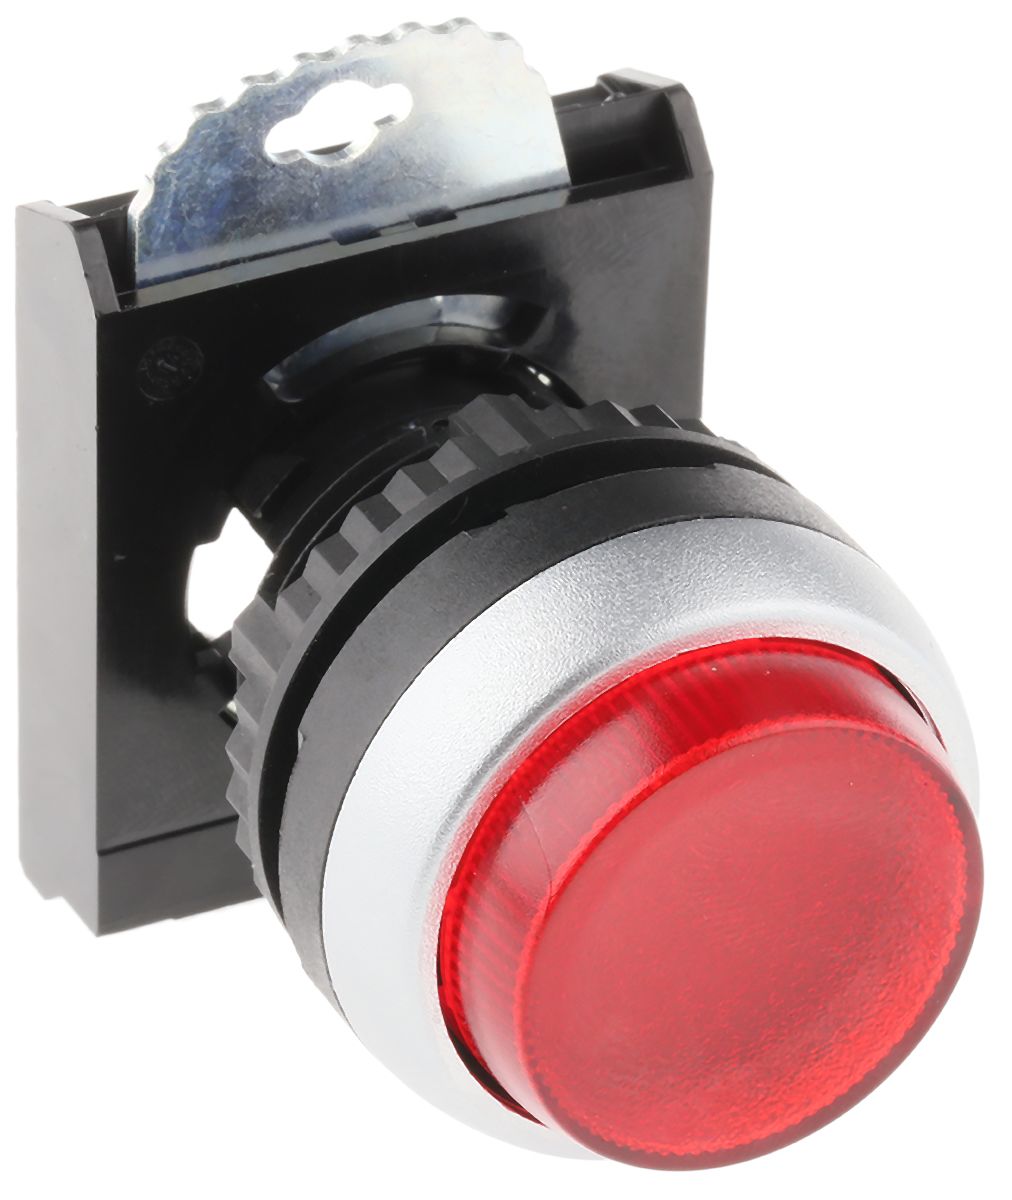 Cabeza pulsador BACO serie BACO, Ø 22mm, de color Rojo, Enclavamiento, IP66